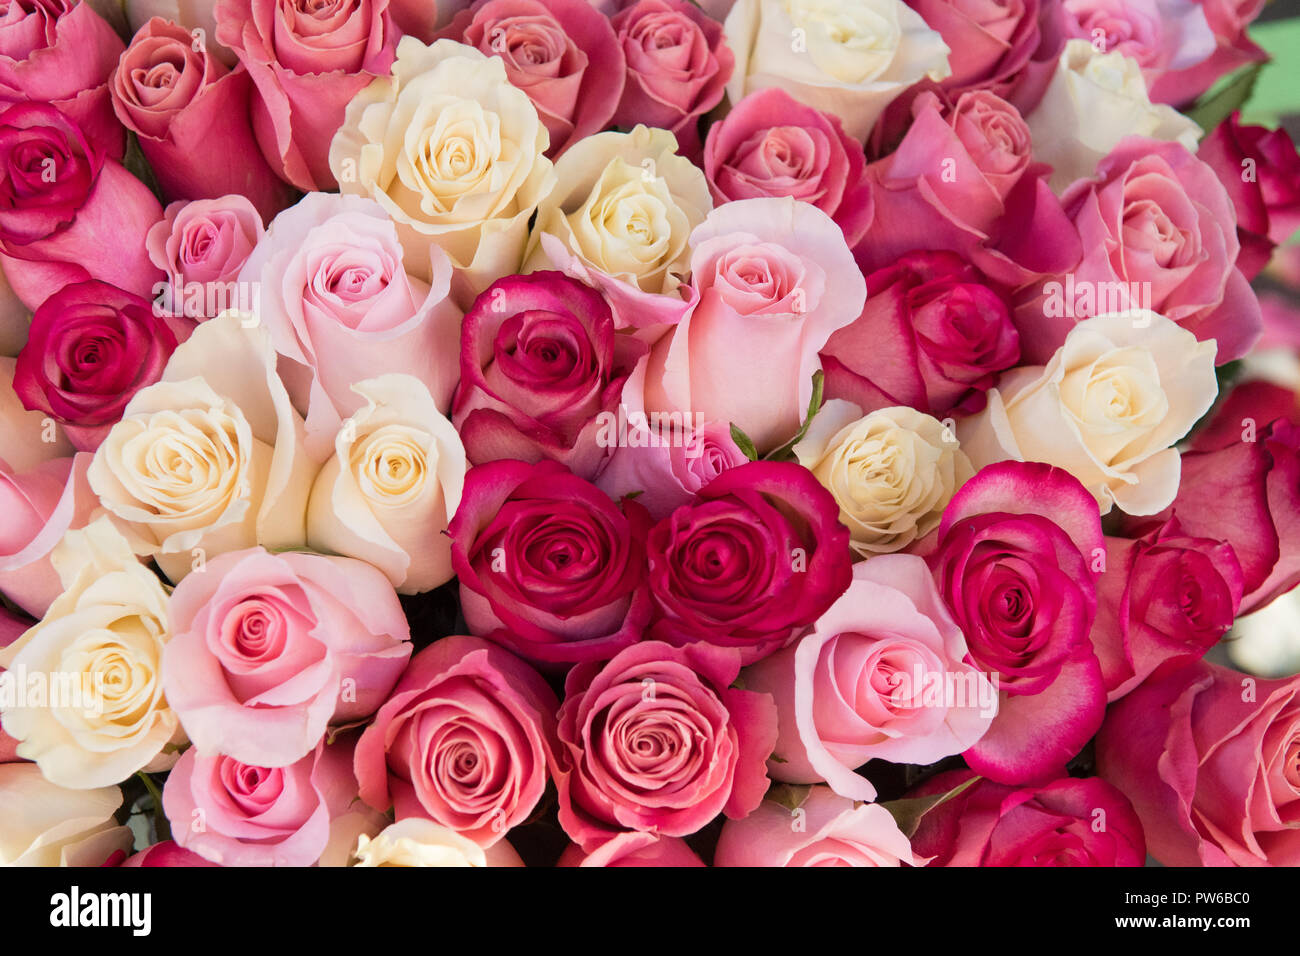 Với sự kết hợp giữa hoa hồng màu hồng và kem, hình nền hoa hồng màu hồng kem sẽ mang đến cho bạn một không gian tuyệt đẹp, tươi mới và đầy sức sống. Hãy chiêm ngưỡng hình ảnh này để cảm nhận được sự tinh tế và độc đáo của thiết kế.